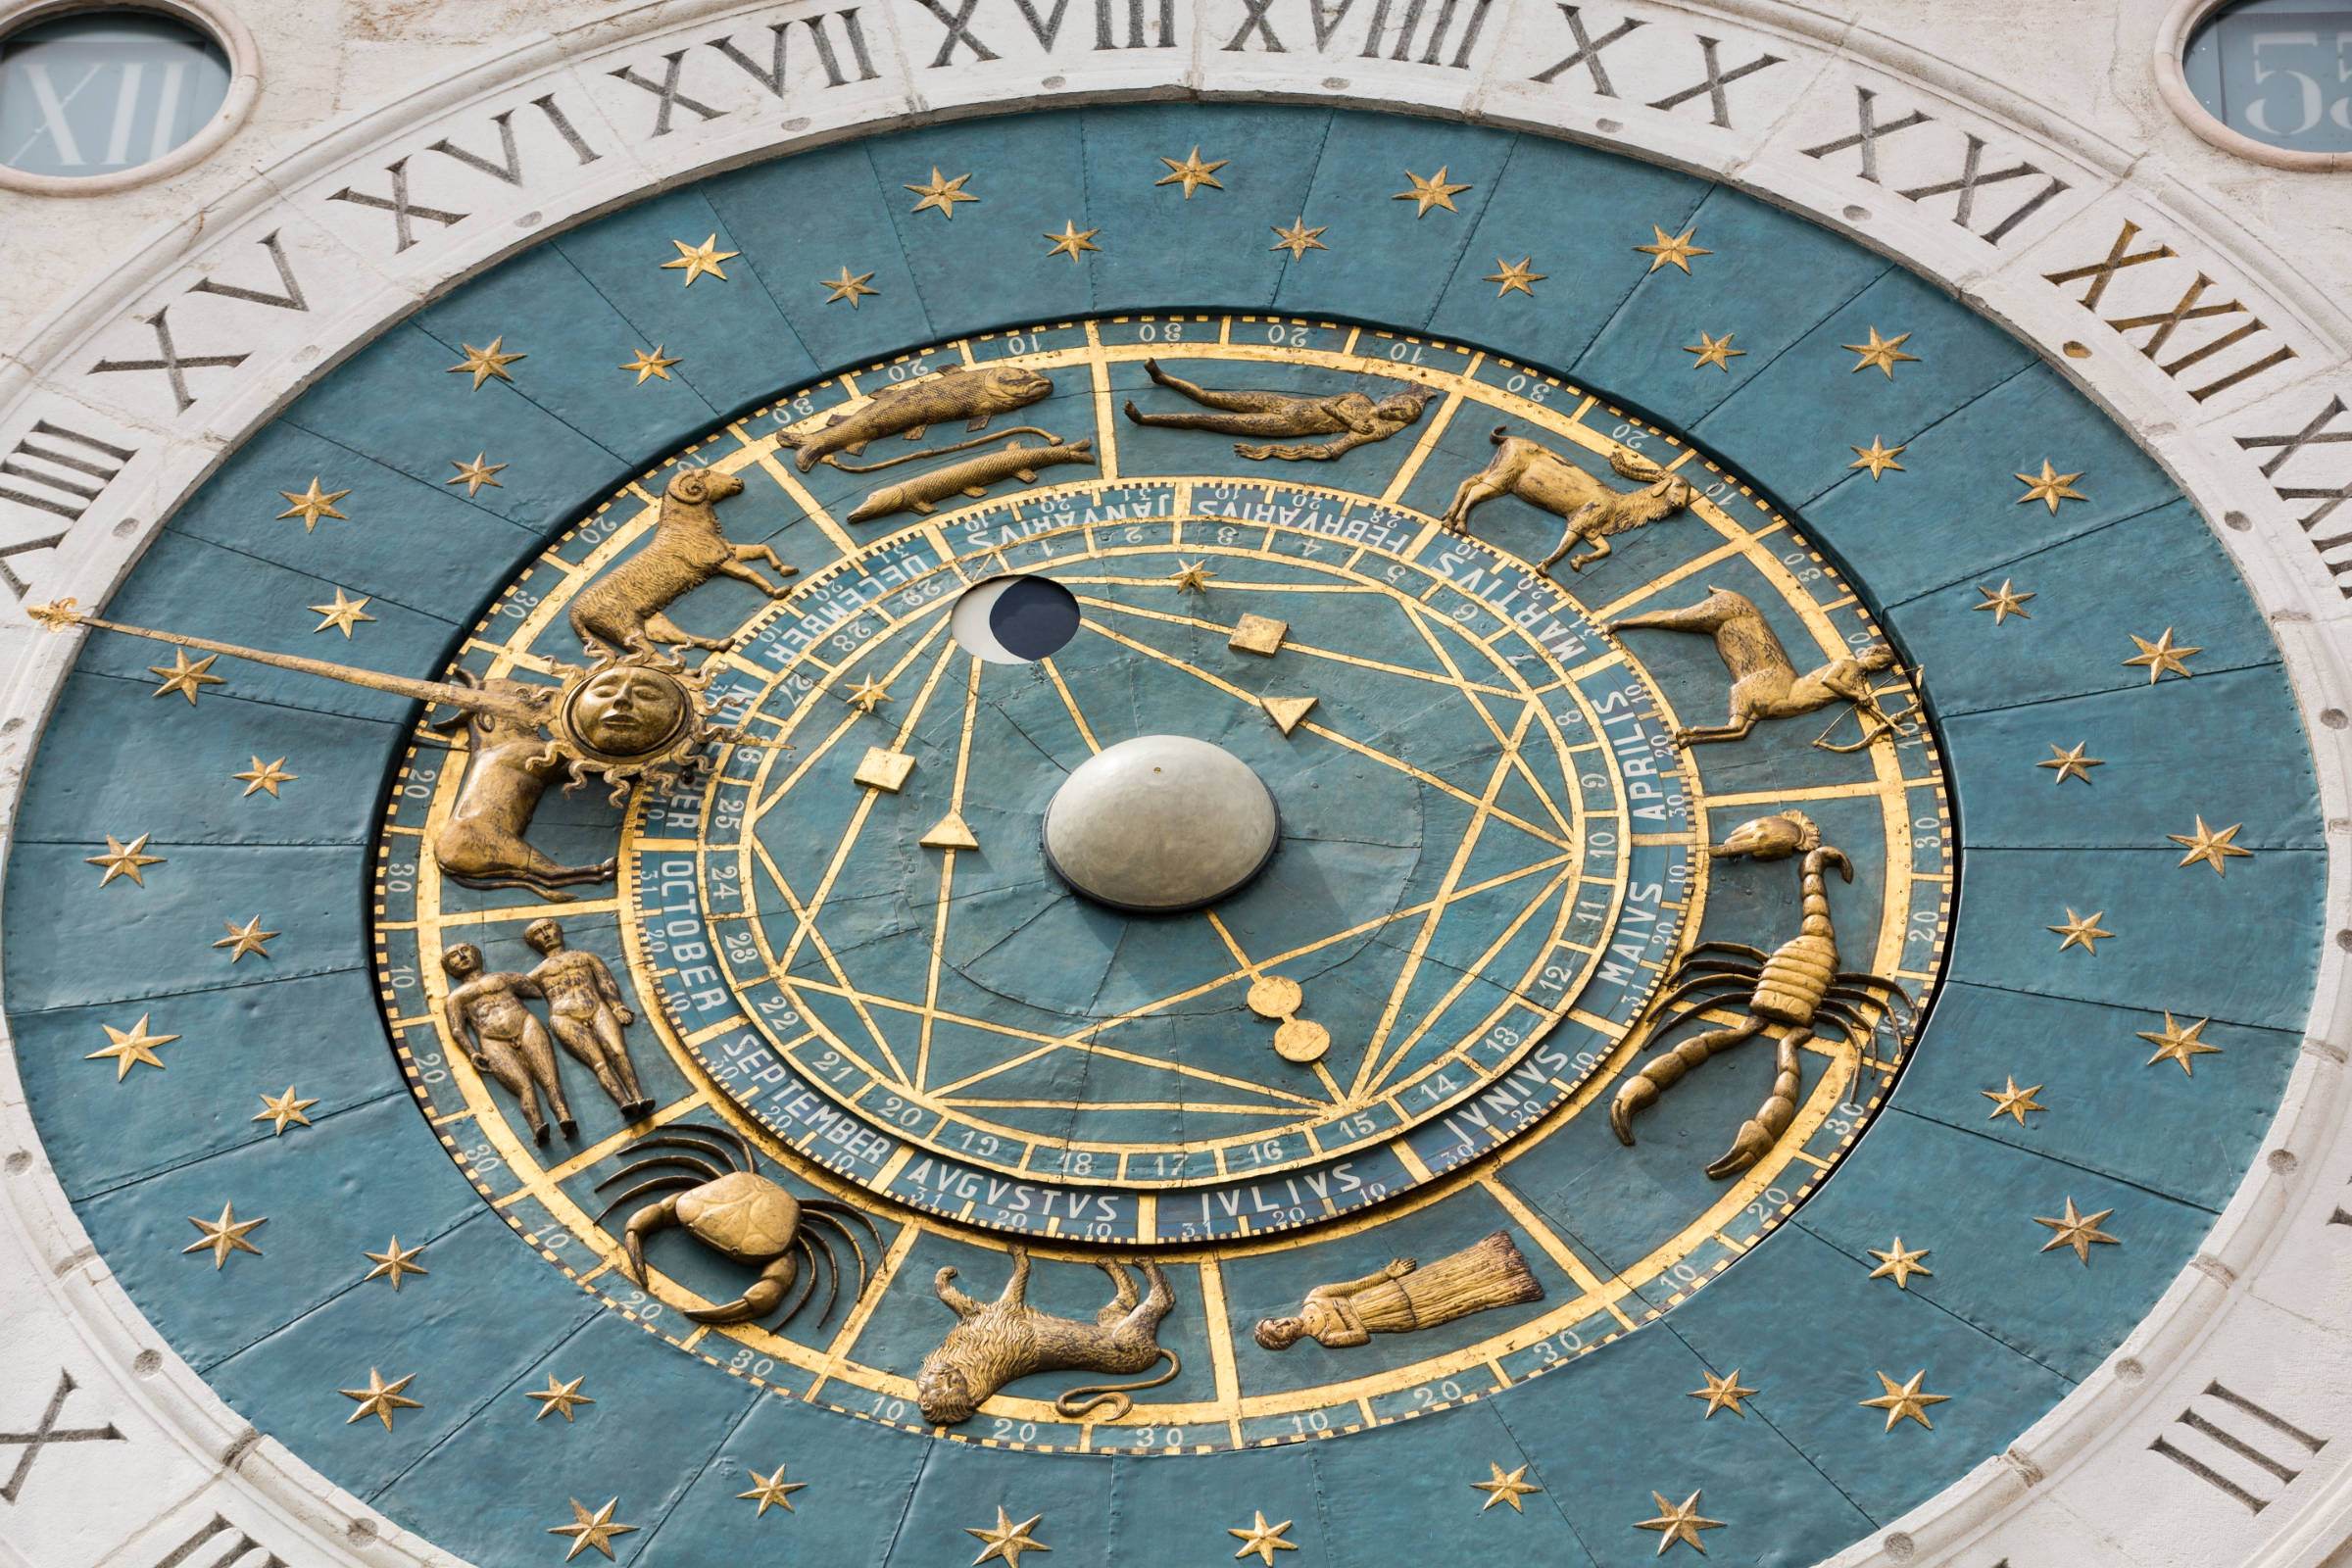 Professional Astrologer Plus